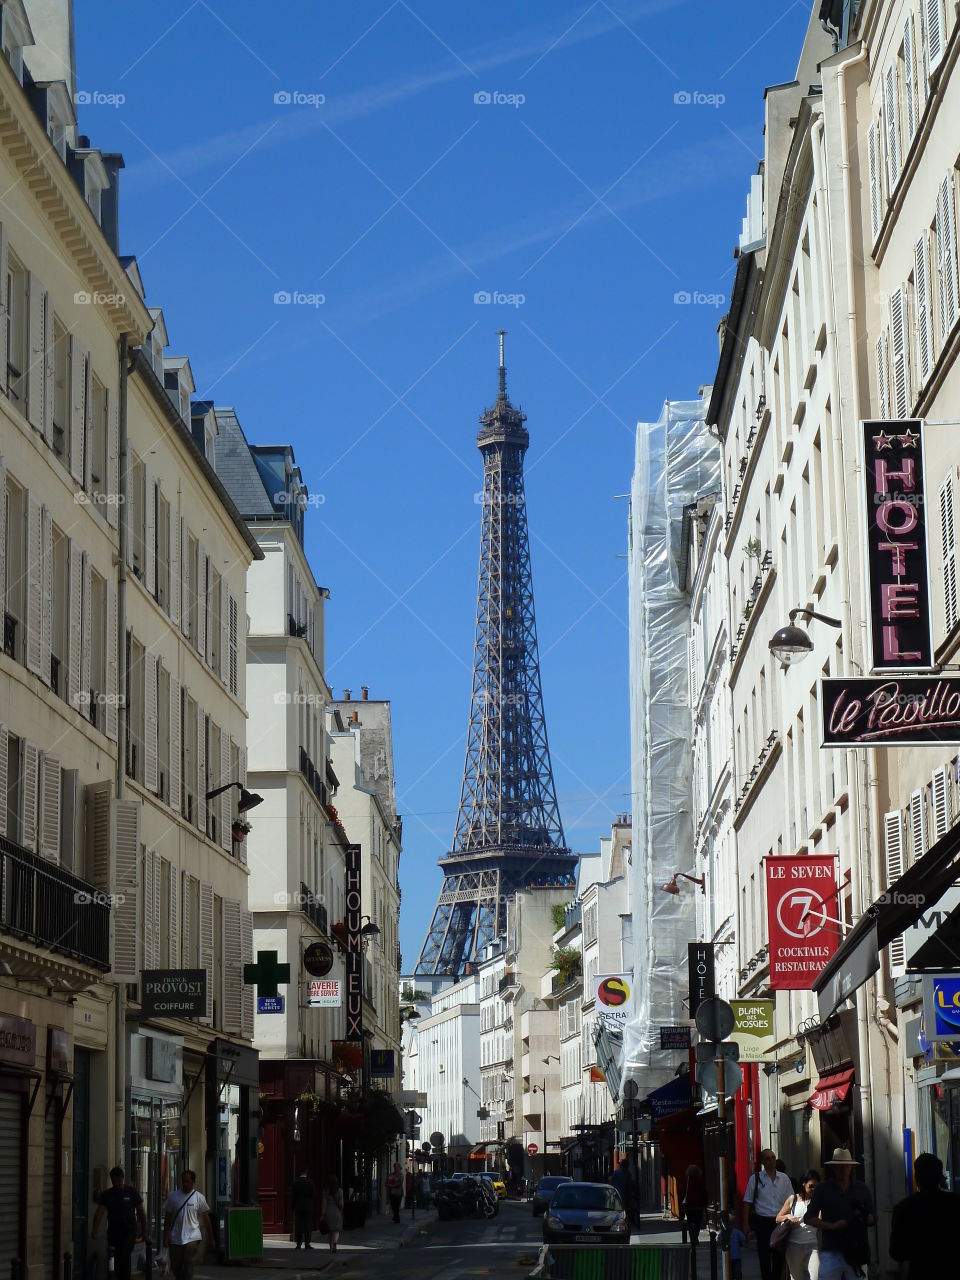 a Parisian street